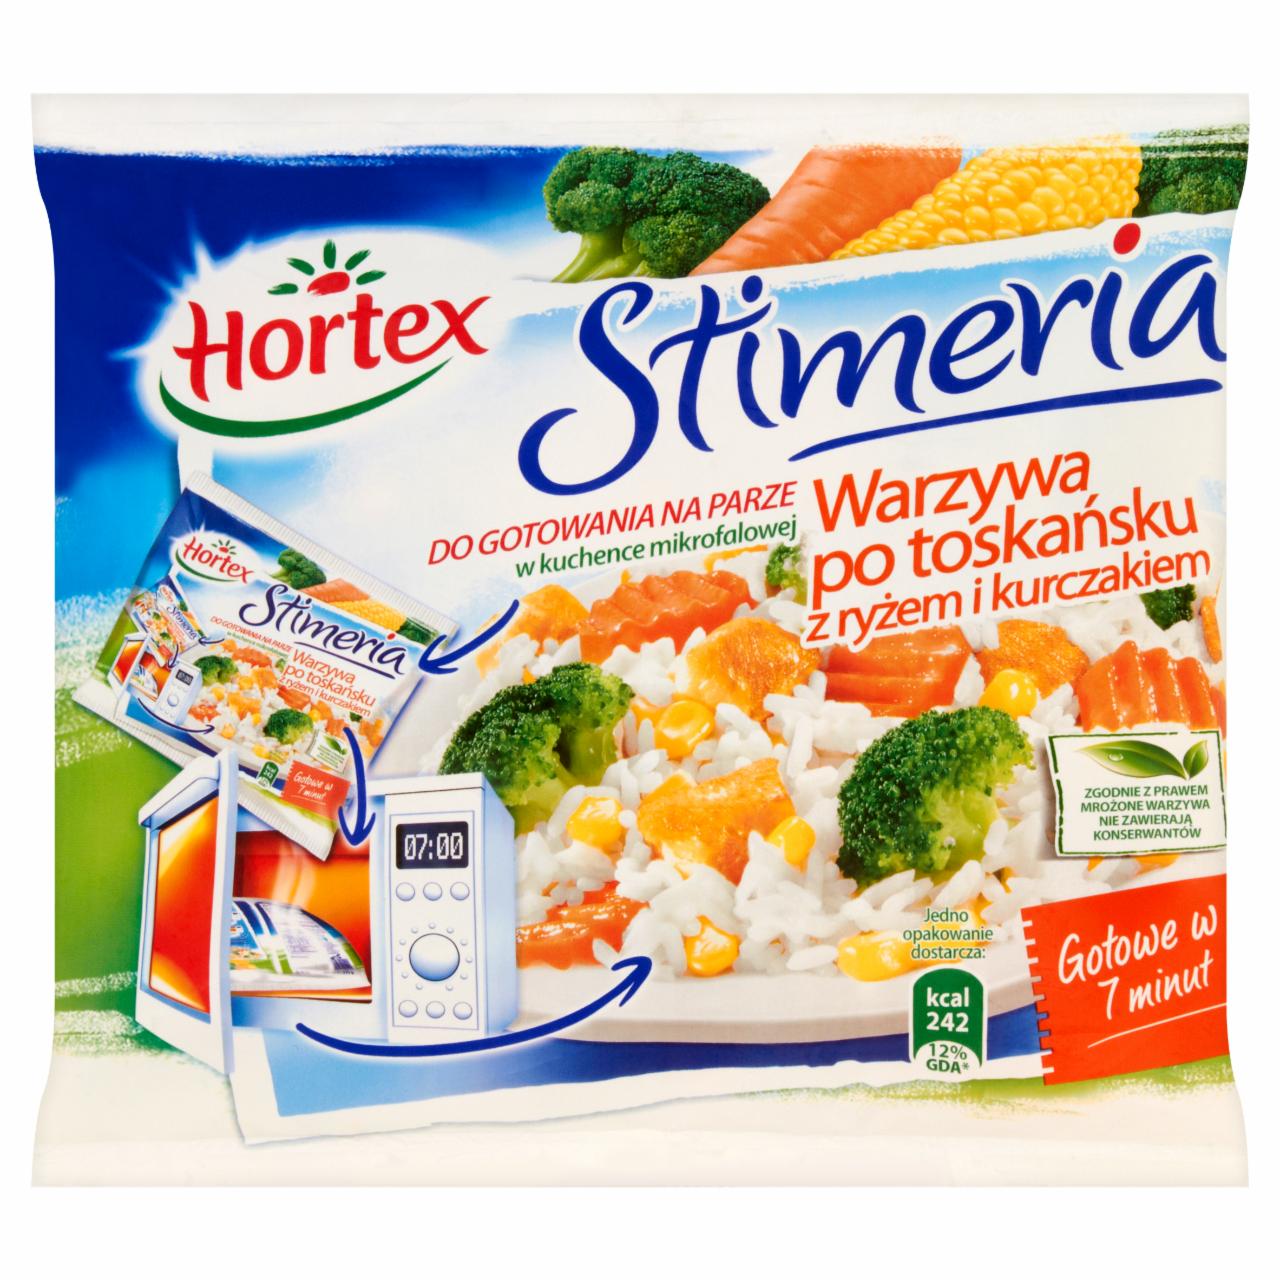 Zdjęcia - Hortex Stimeria Warzywa po toskańsku z ryżem i kurczakiem 275 g